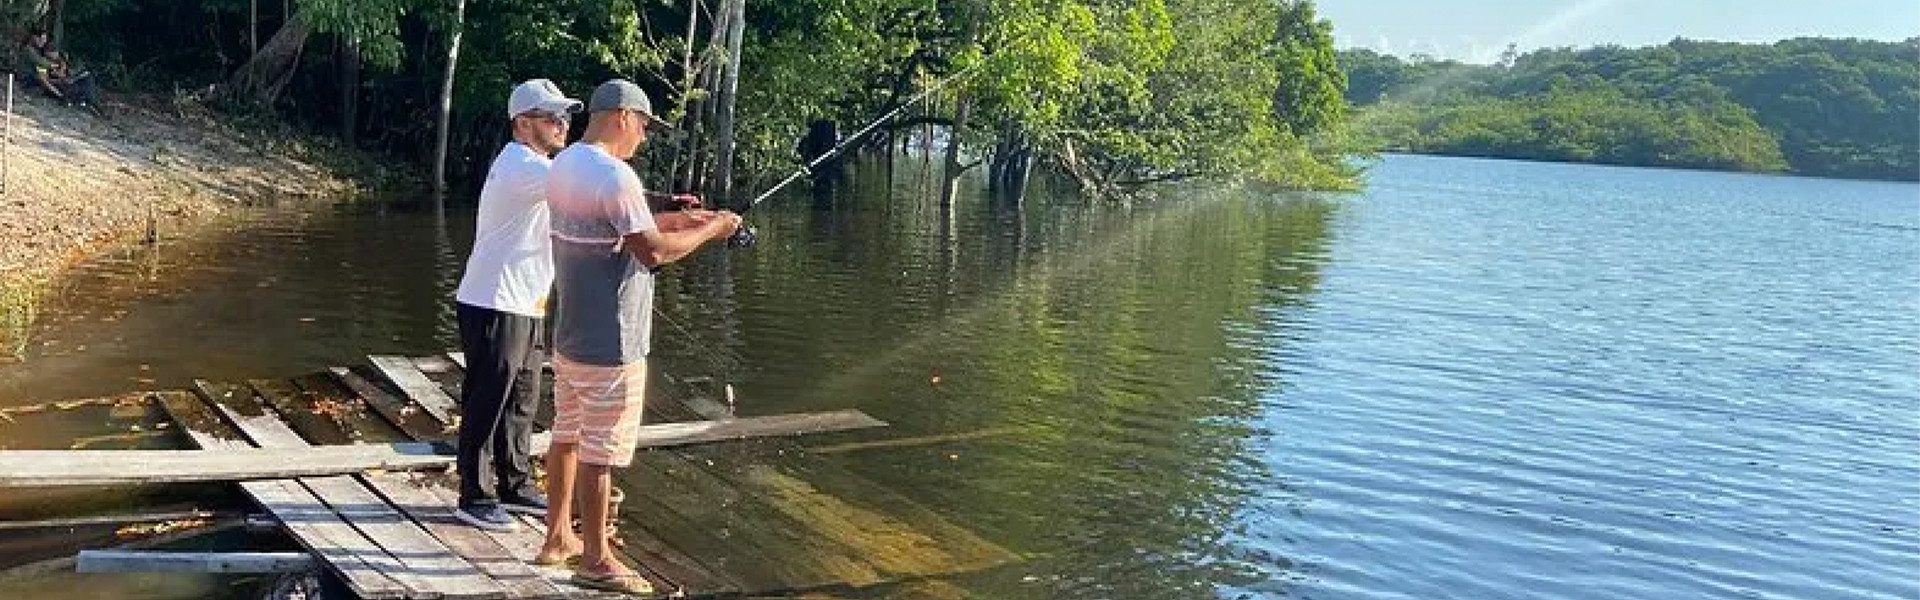 Curso de Agente de Pesca Esportiva em Manaus: Prefeitura cria curso para comunitários do rio Cuieiras